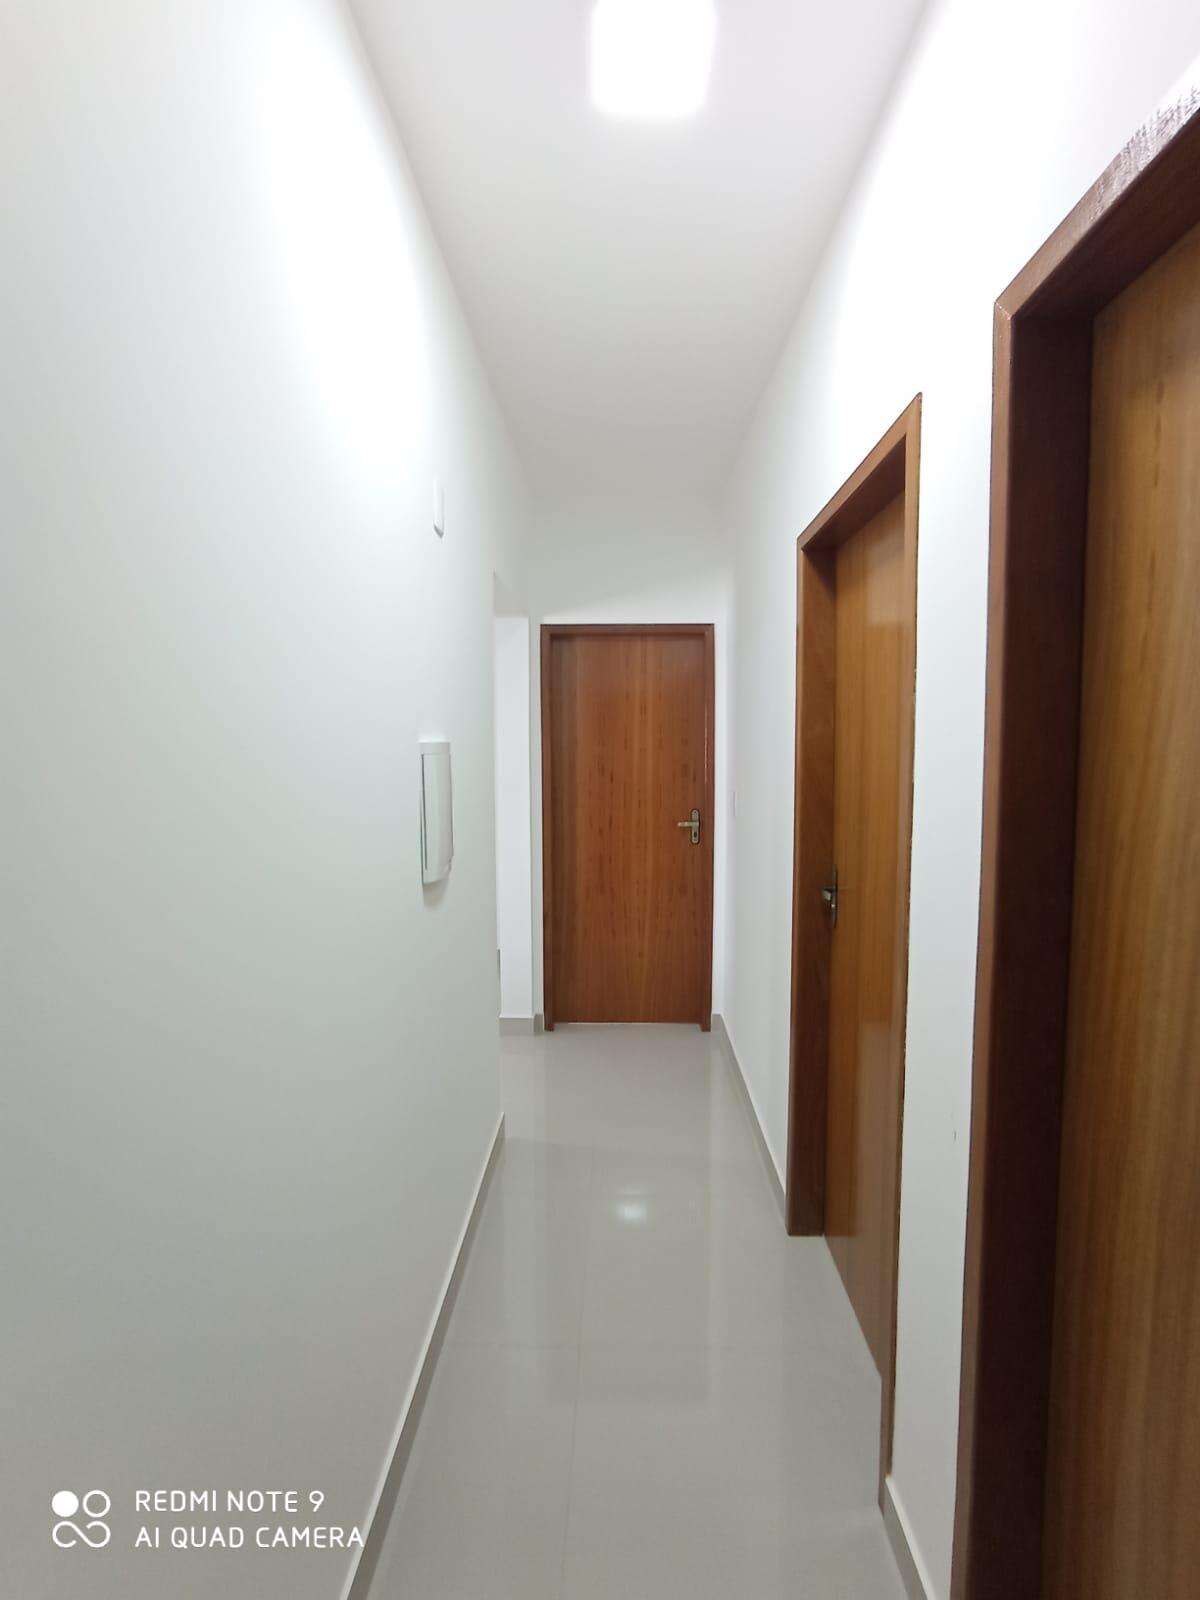 Apartamento 2 quartos à venda no Zacarias: c361debd-7-whatsapp-image-2023-07-25-at-15.08.05-1.jpeg